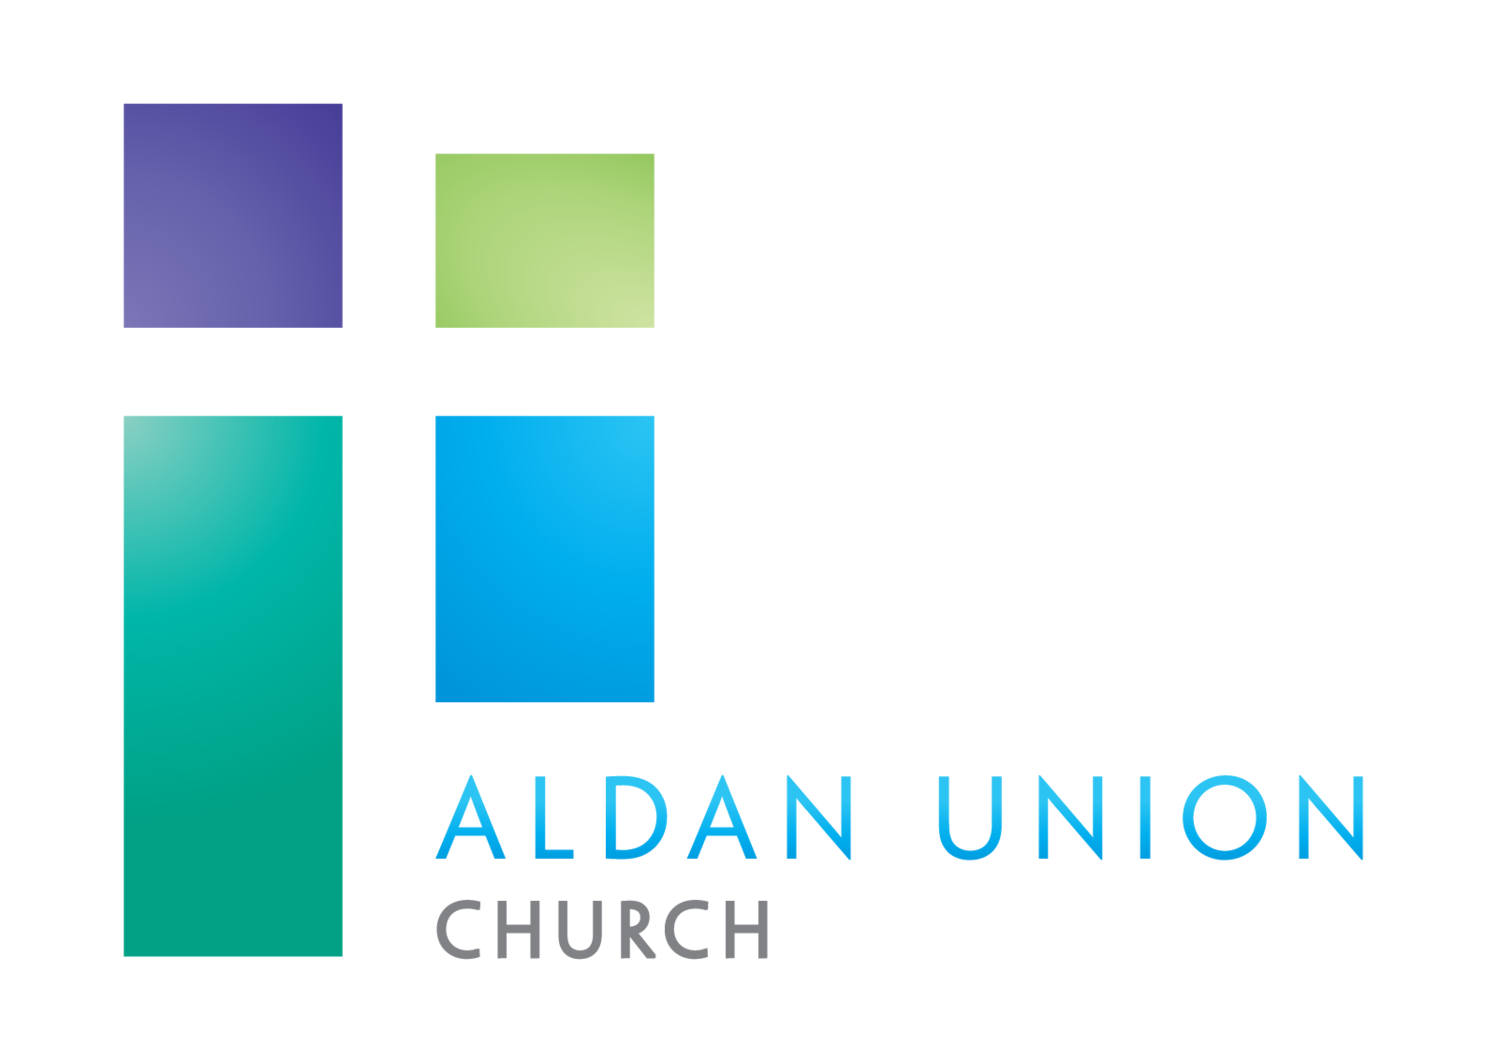 Aldan Union Church